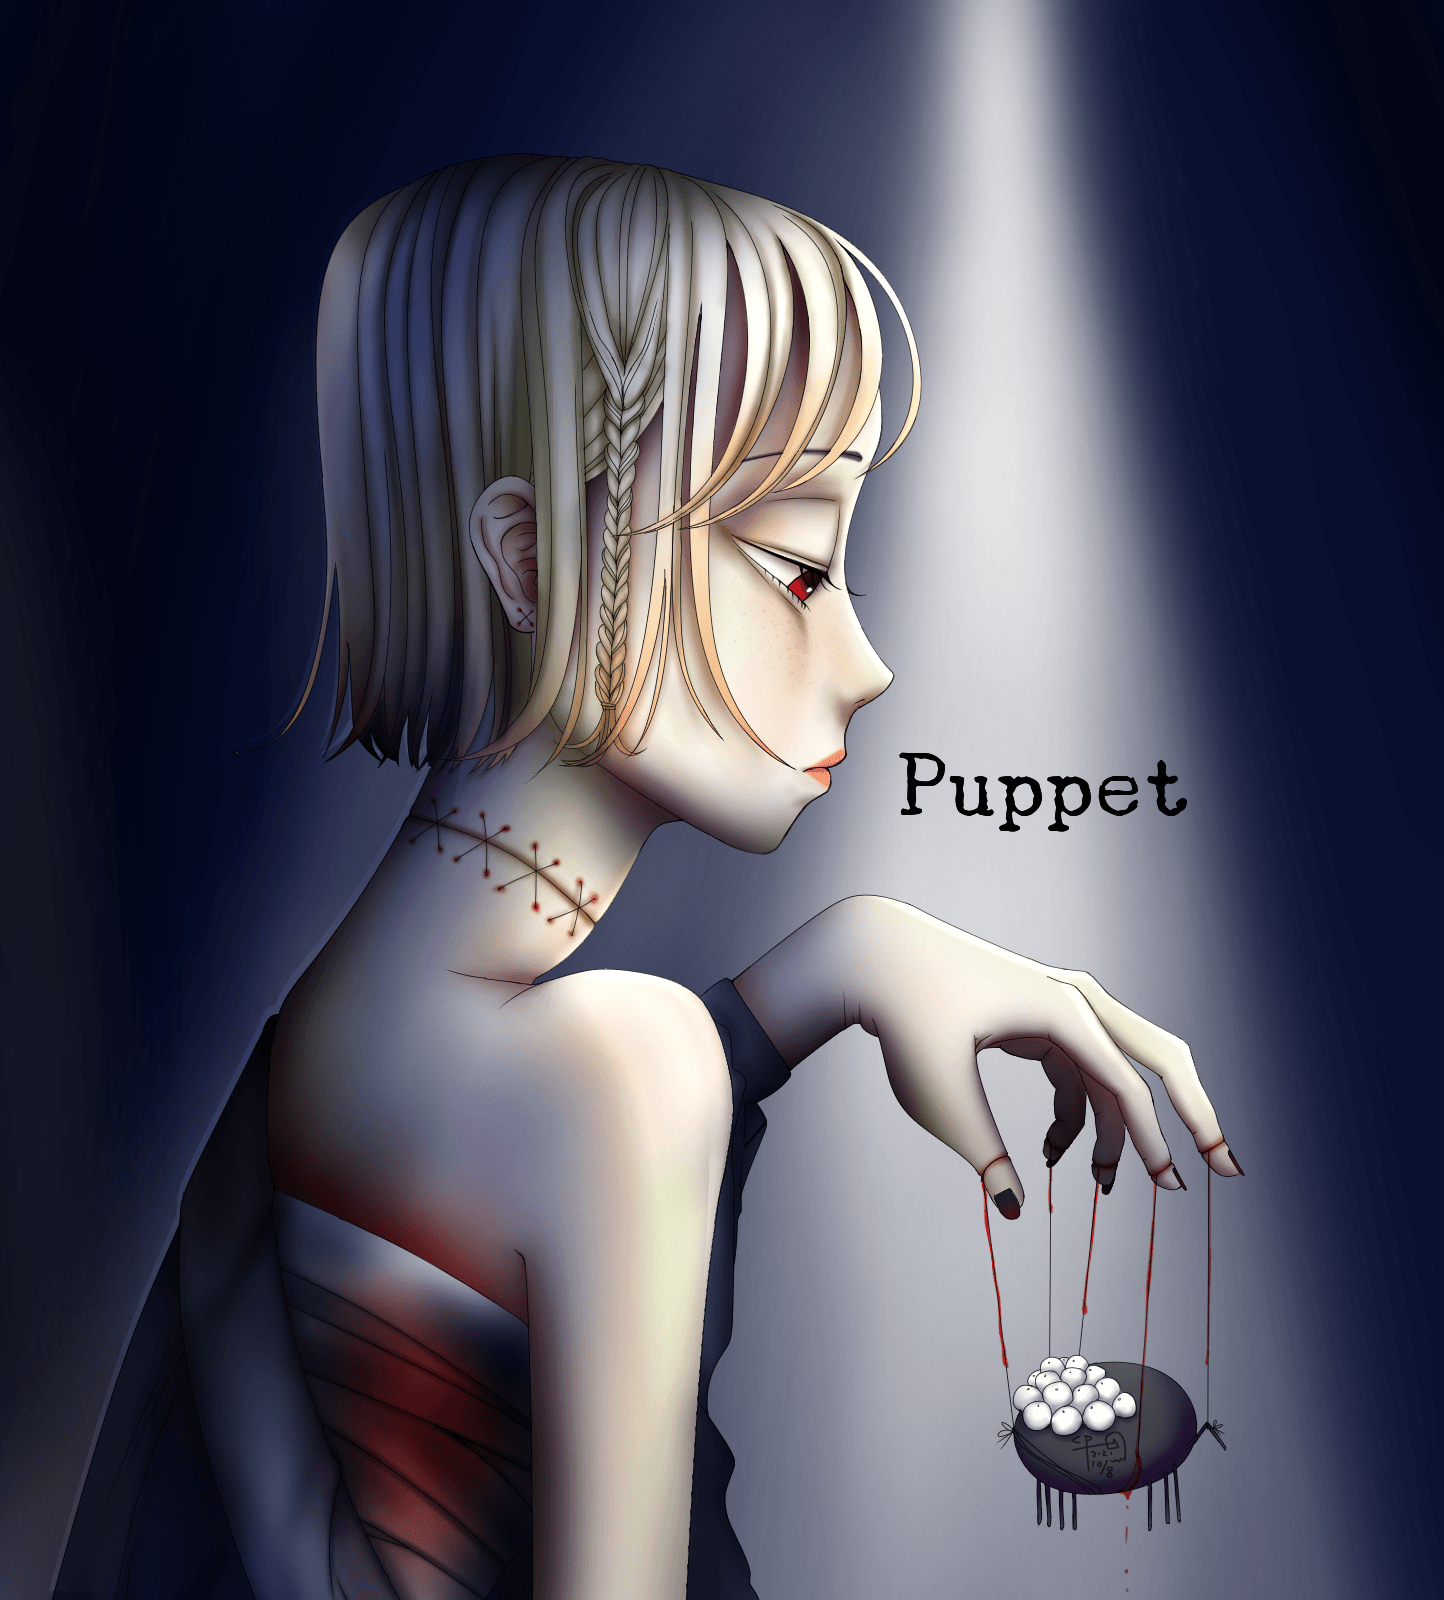 Puppet